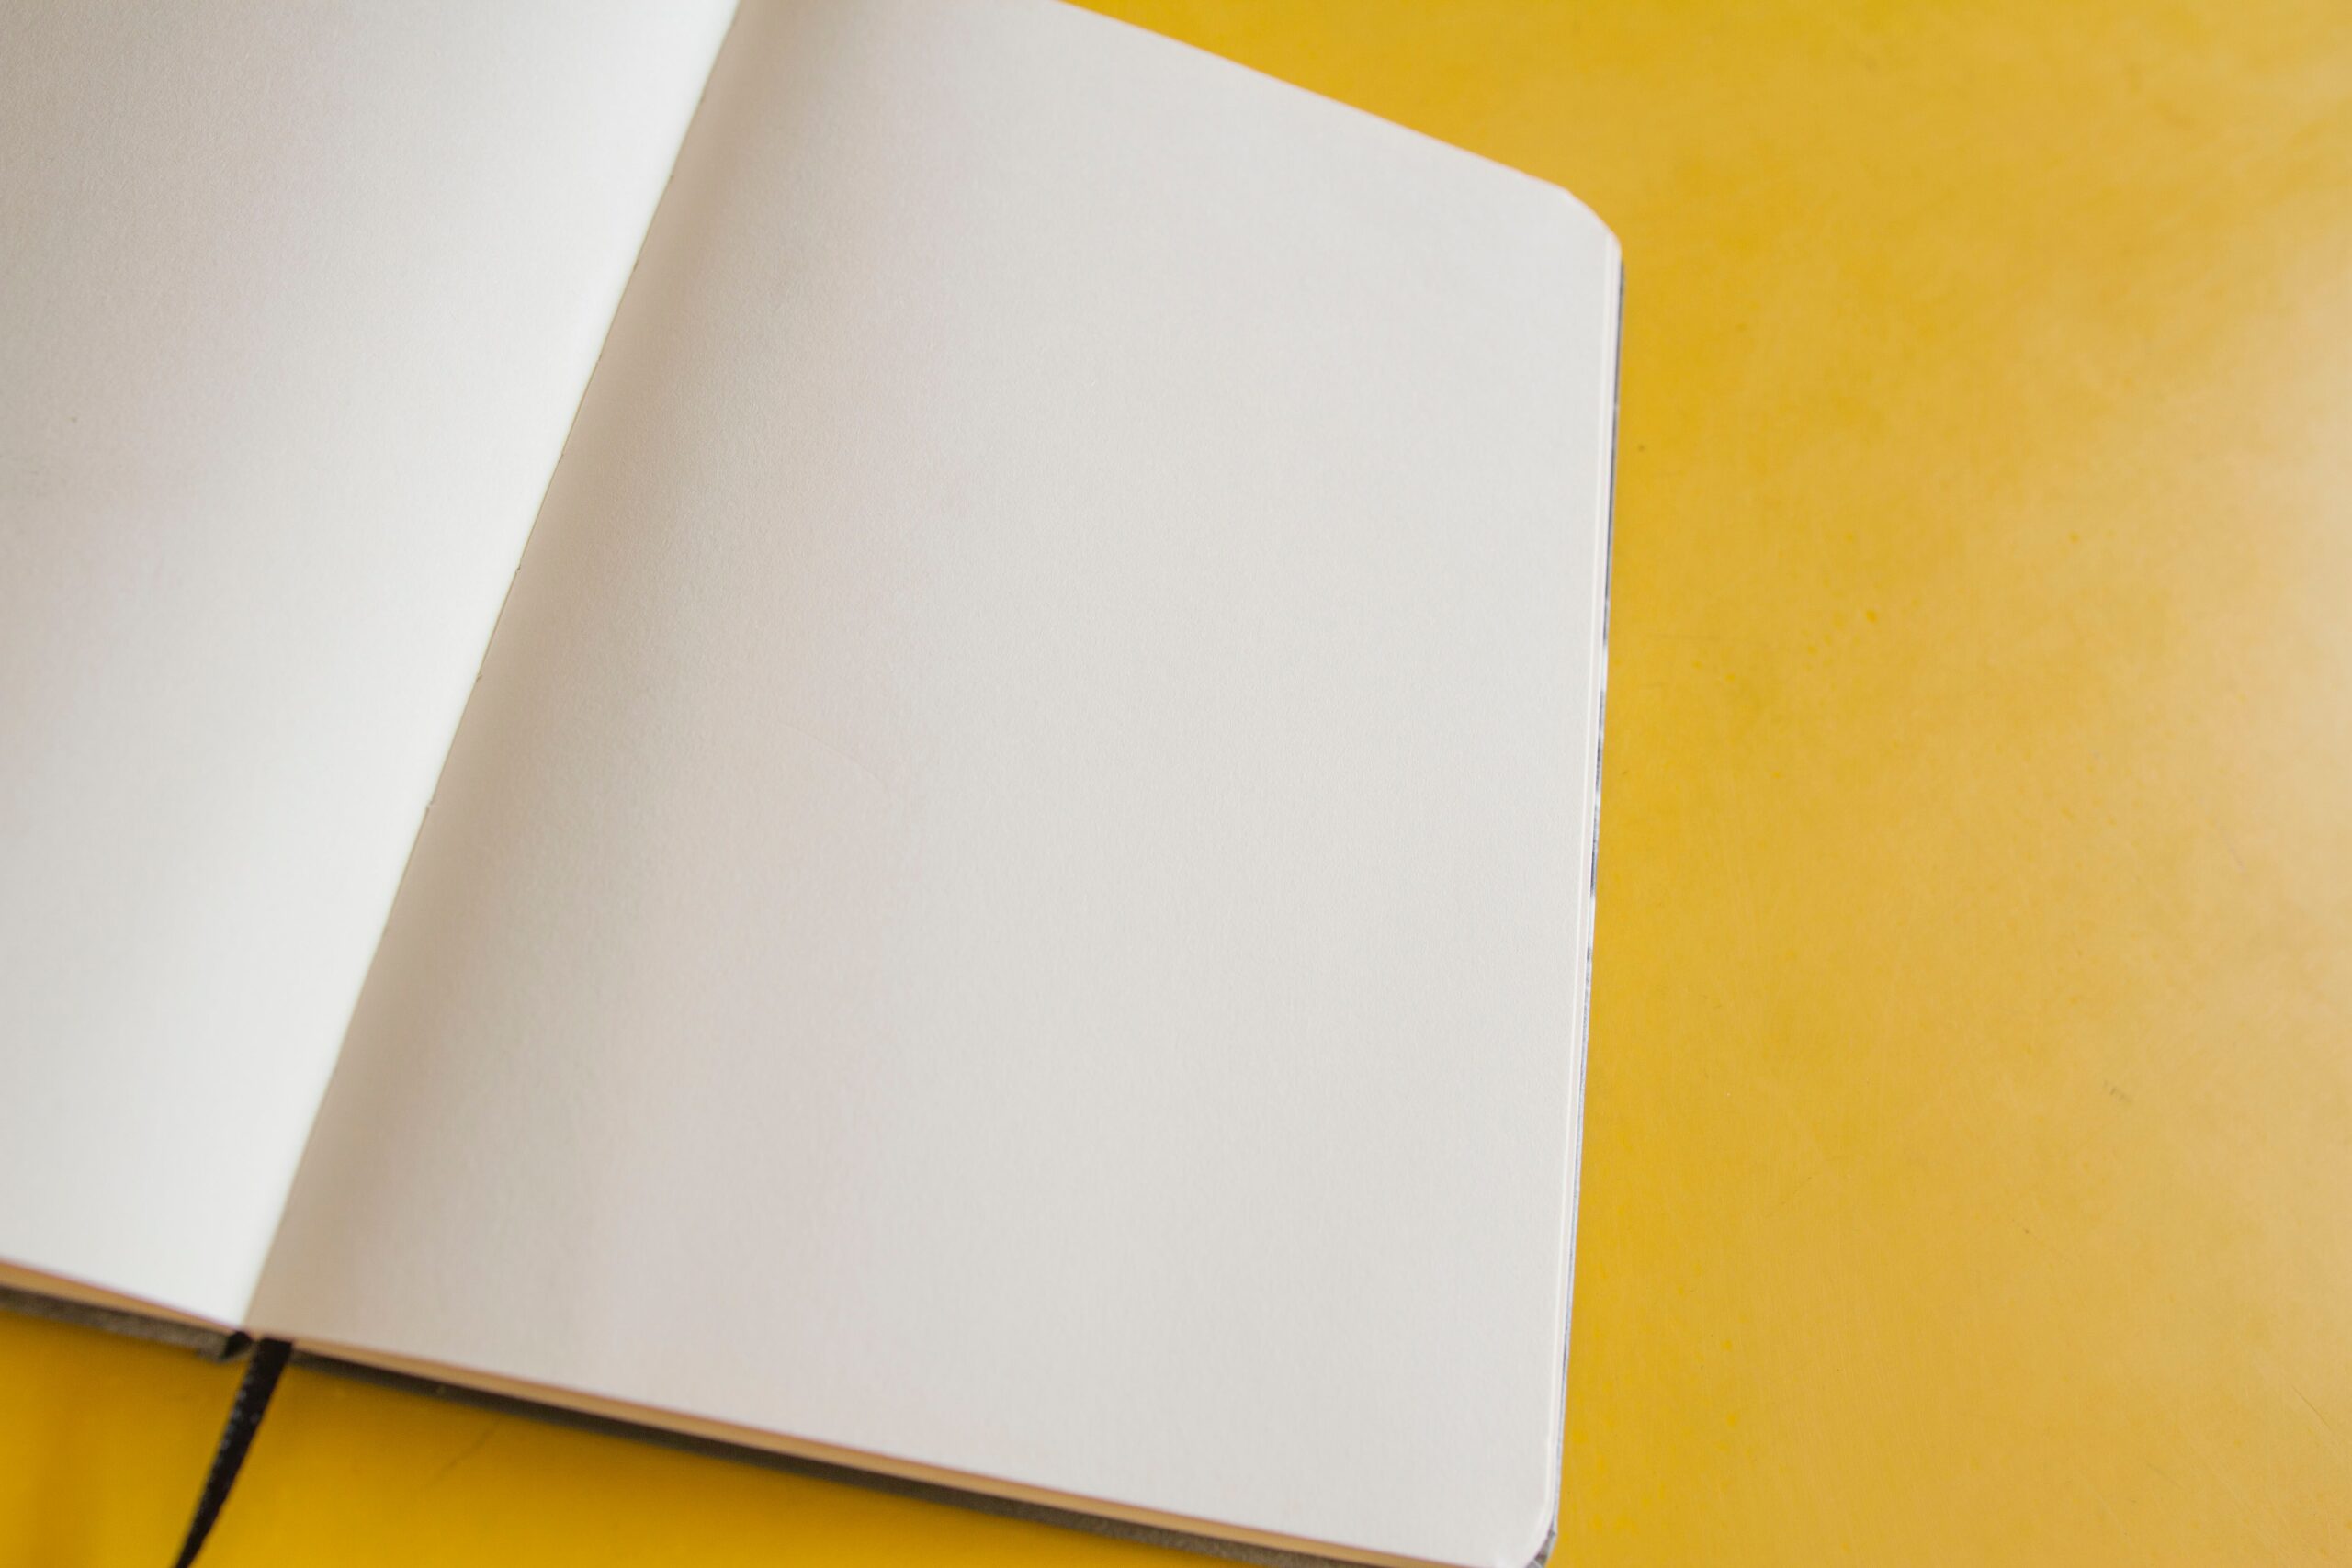 alt="quaderno vuoto su sfondo giallo, consigli per stimolare la creatività"